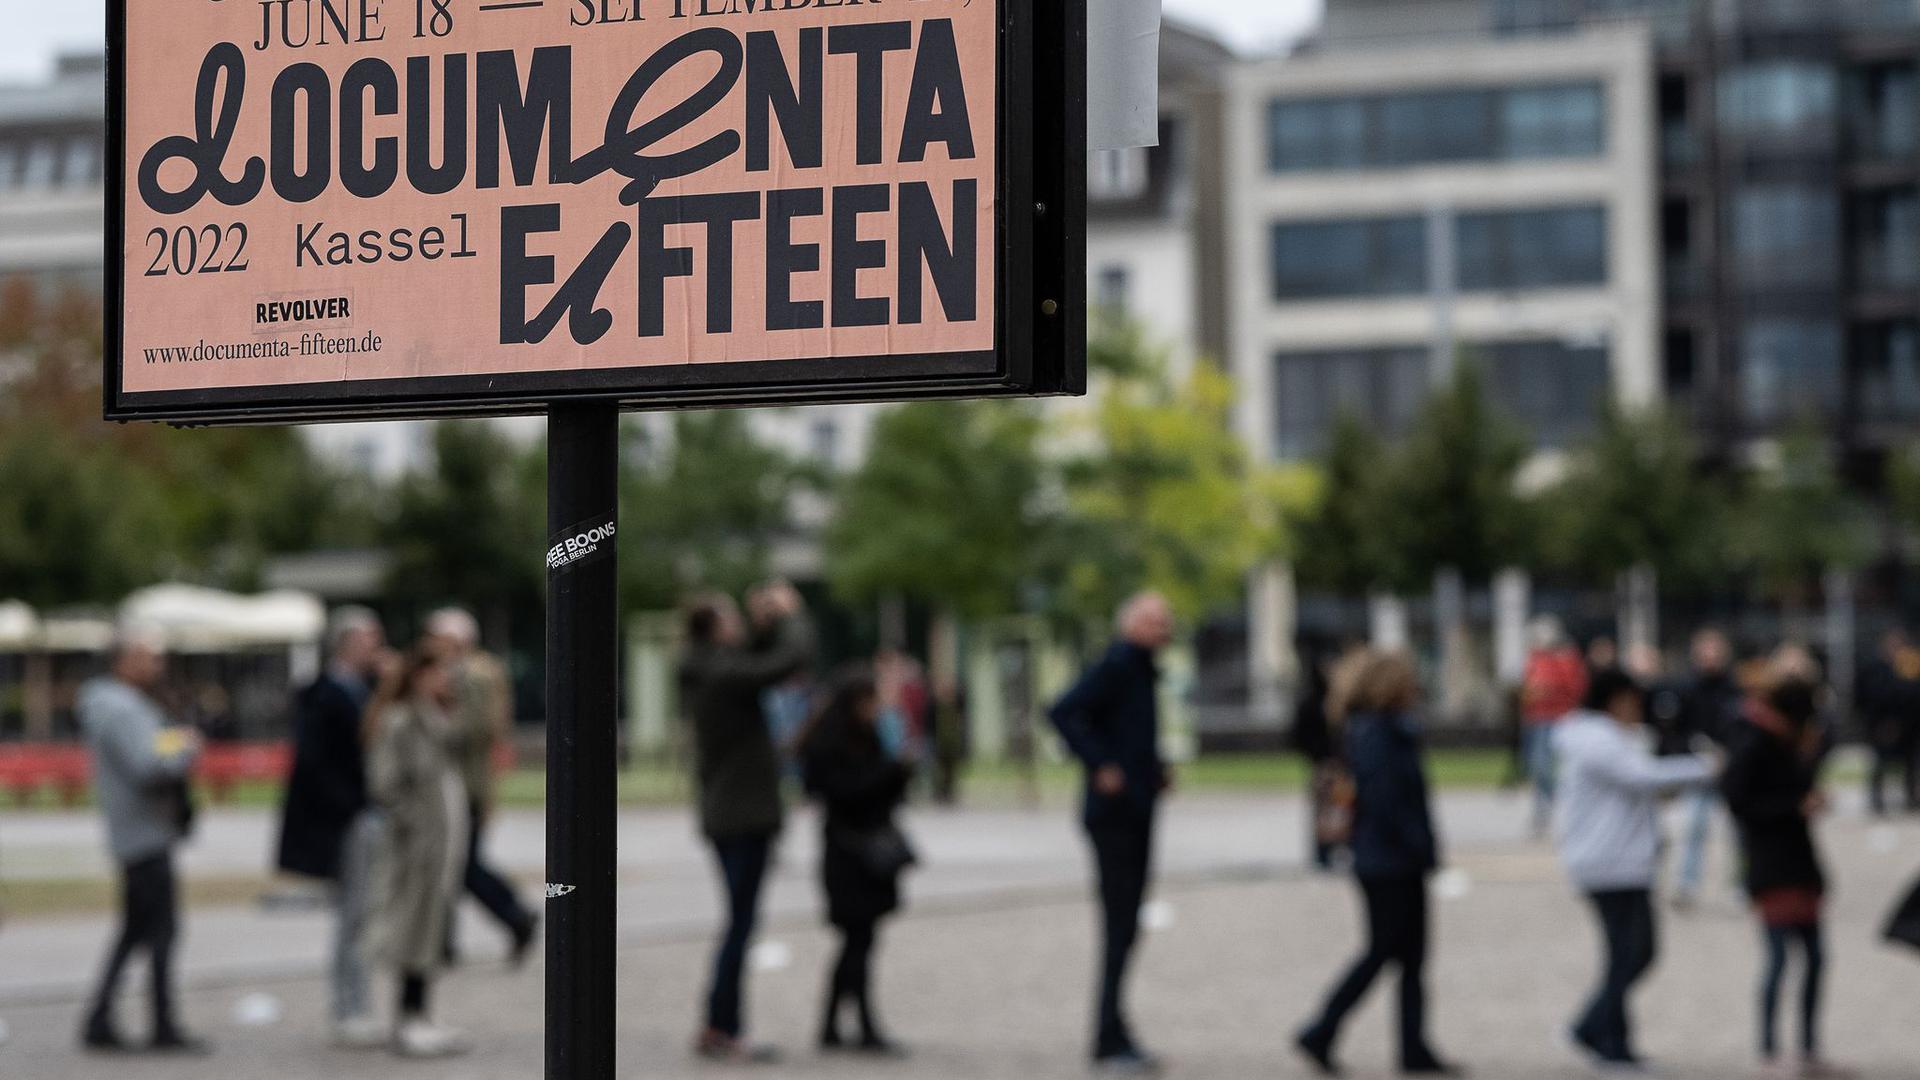 Nach 100 Tagen endet an diesem Sonntag die documenta fifteen – eine der bedeutsamsten Ausstellungen für zeitgenössische Kunst.